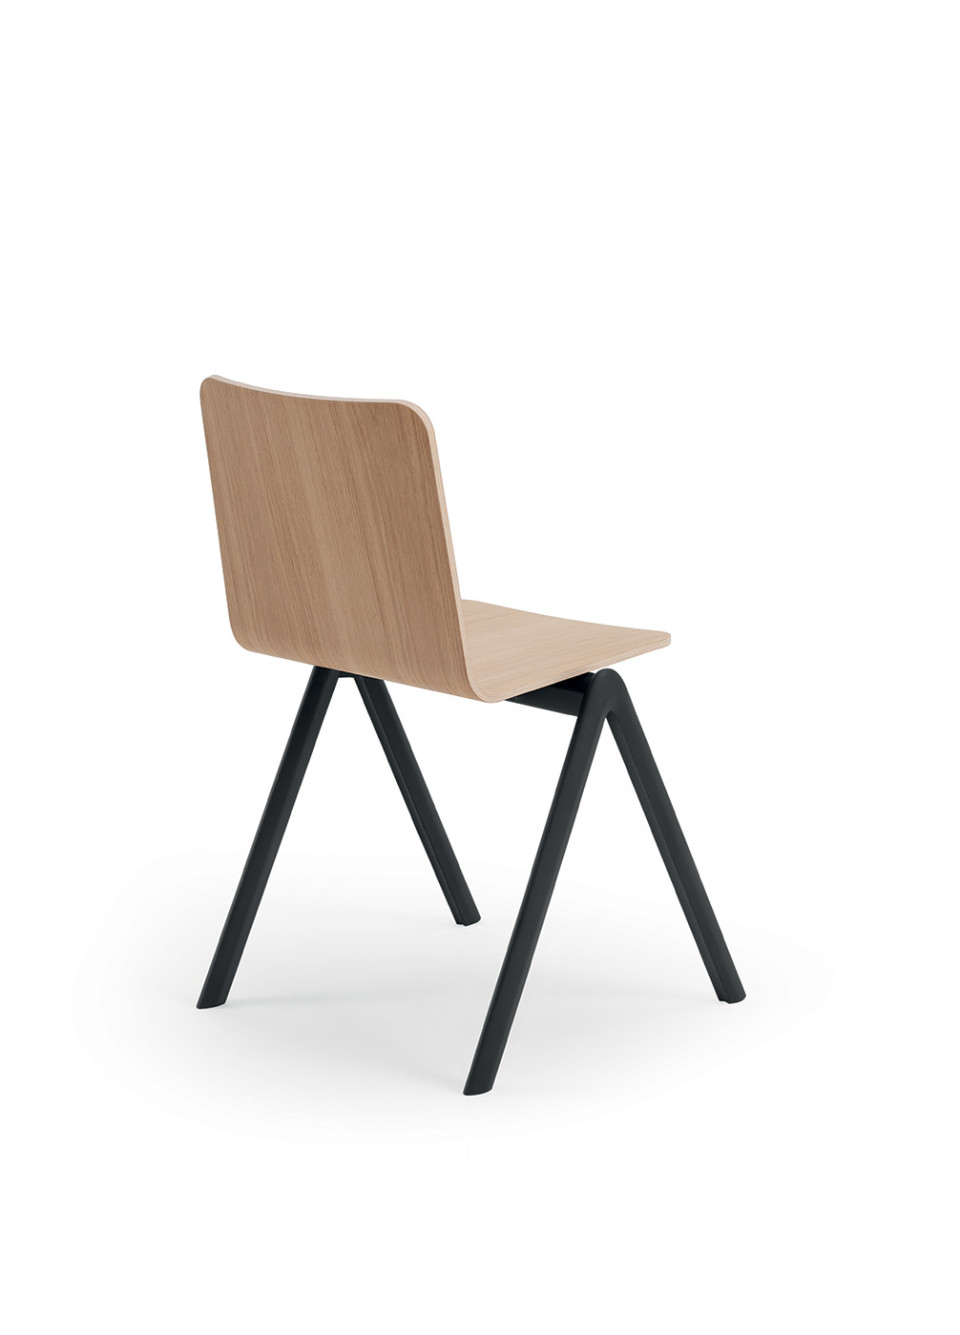 Sedia Stack con sedile in legno impiallacciato di rovere